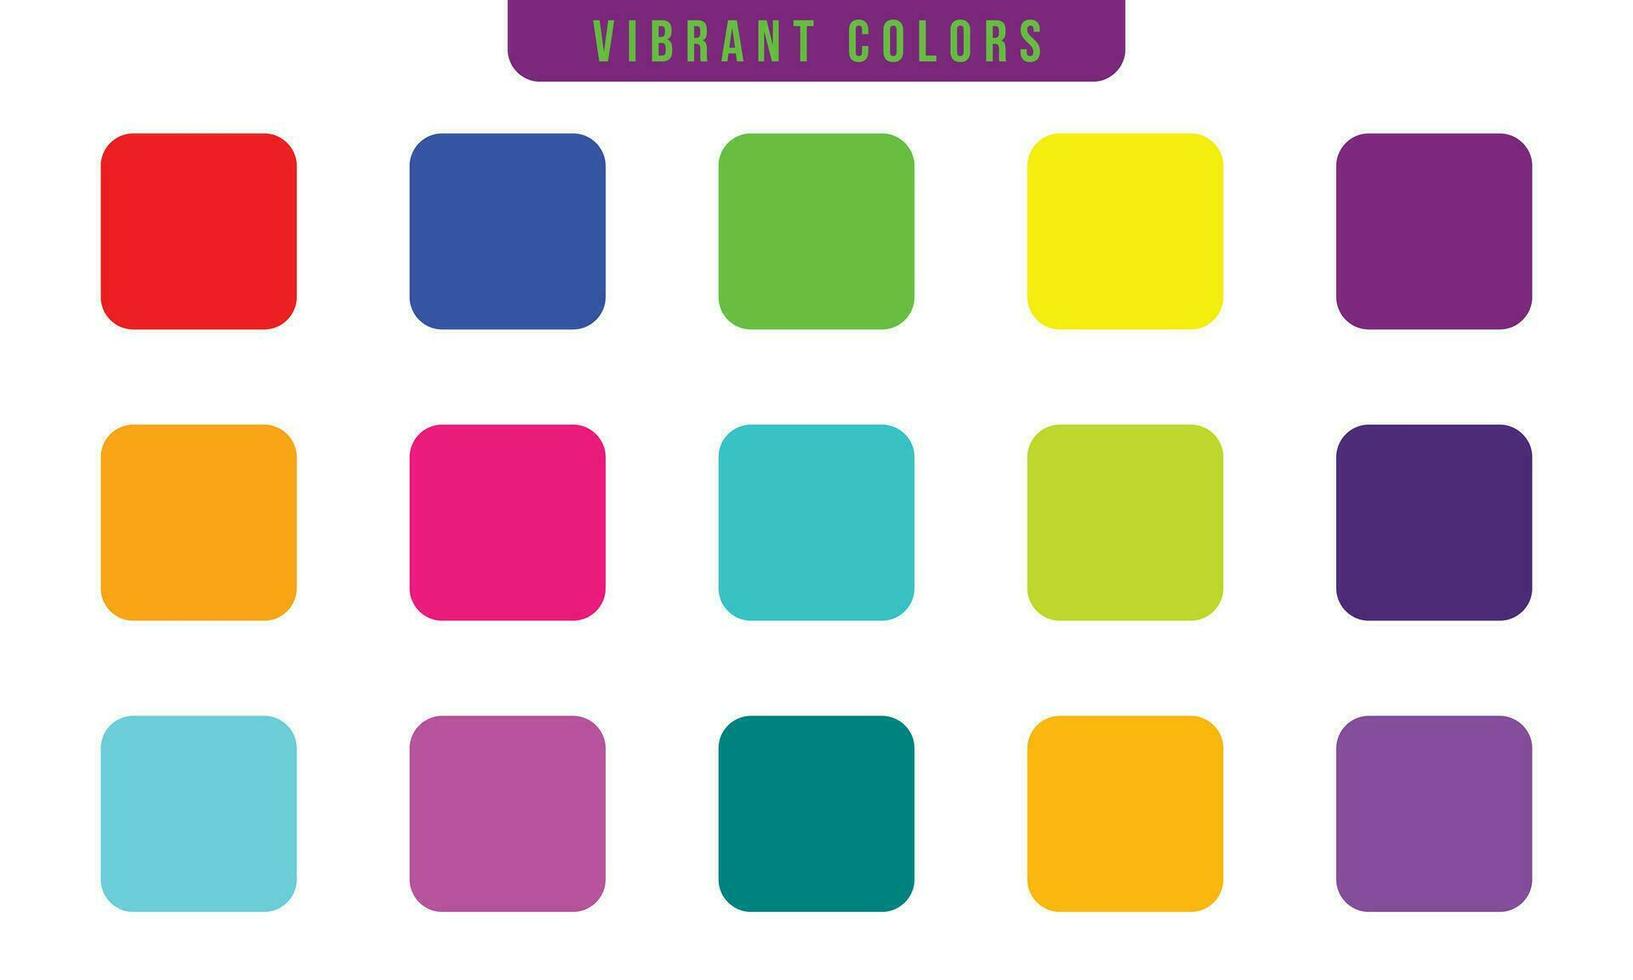 15 vibrant colors palette set vector illustration